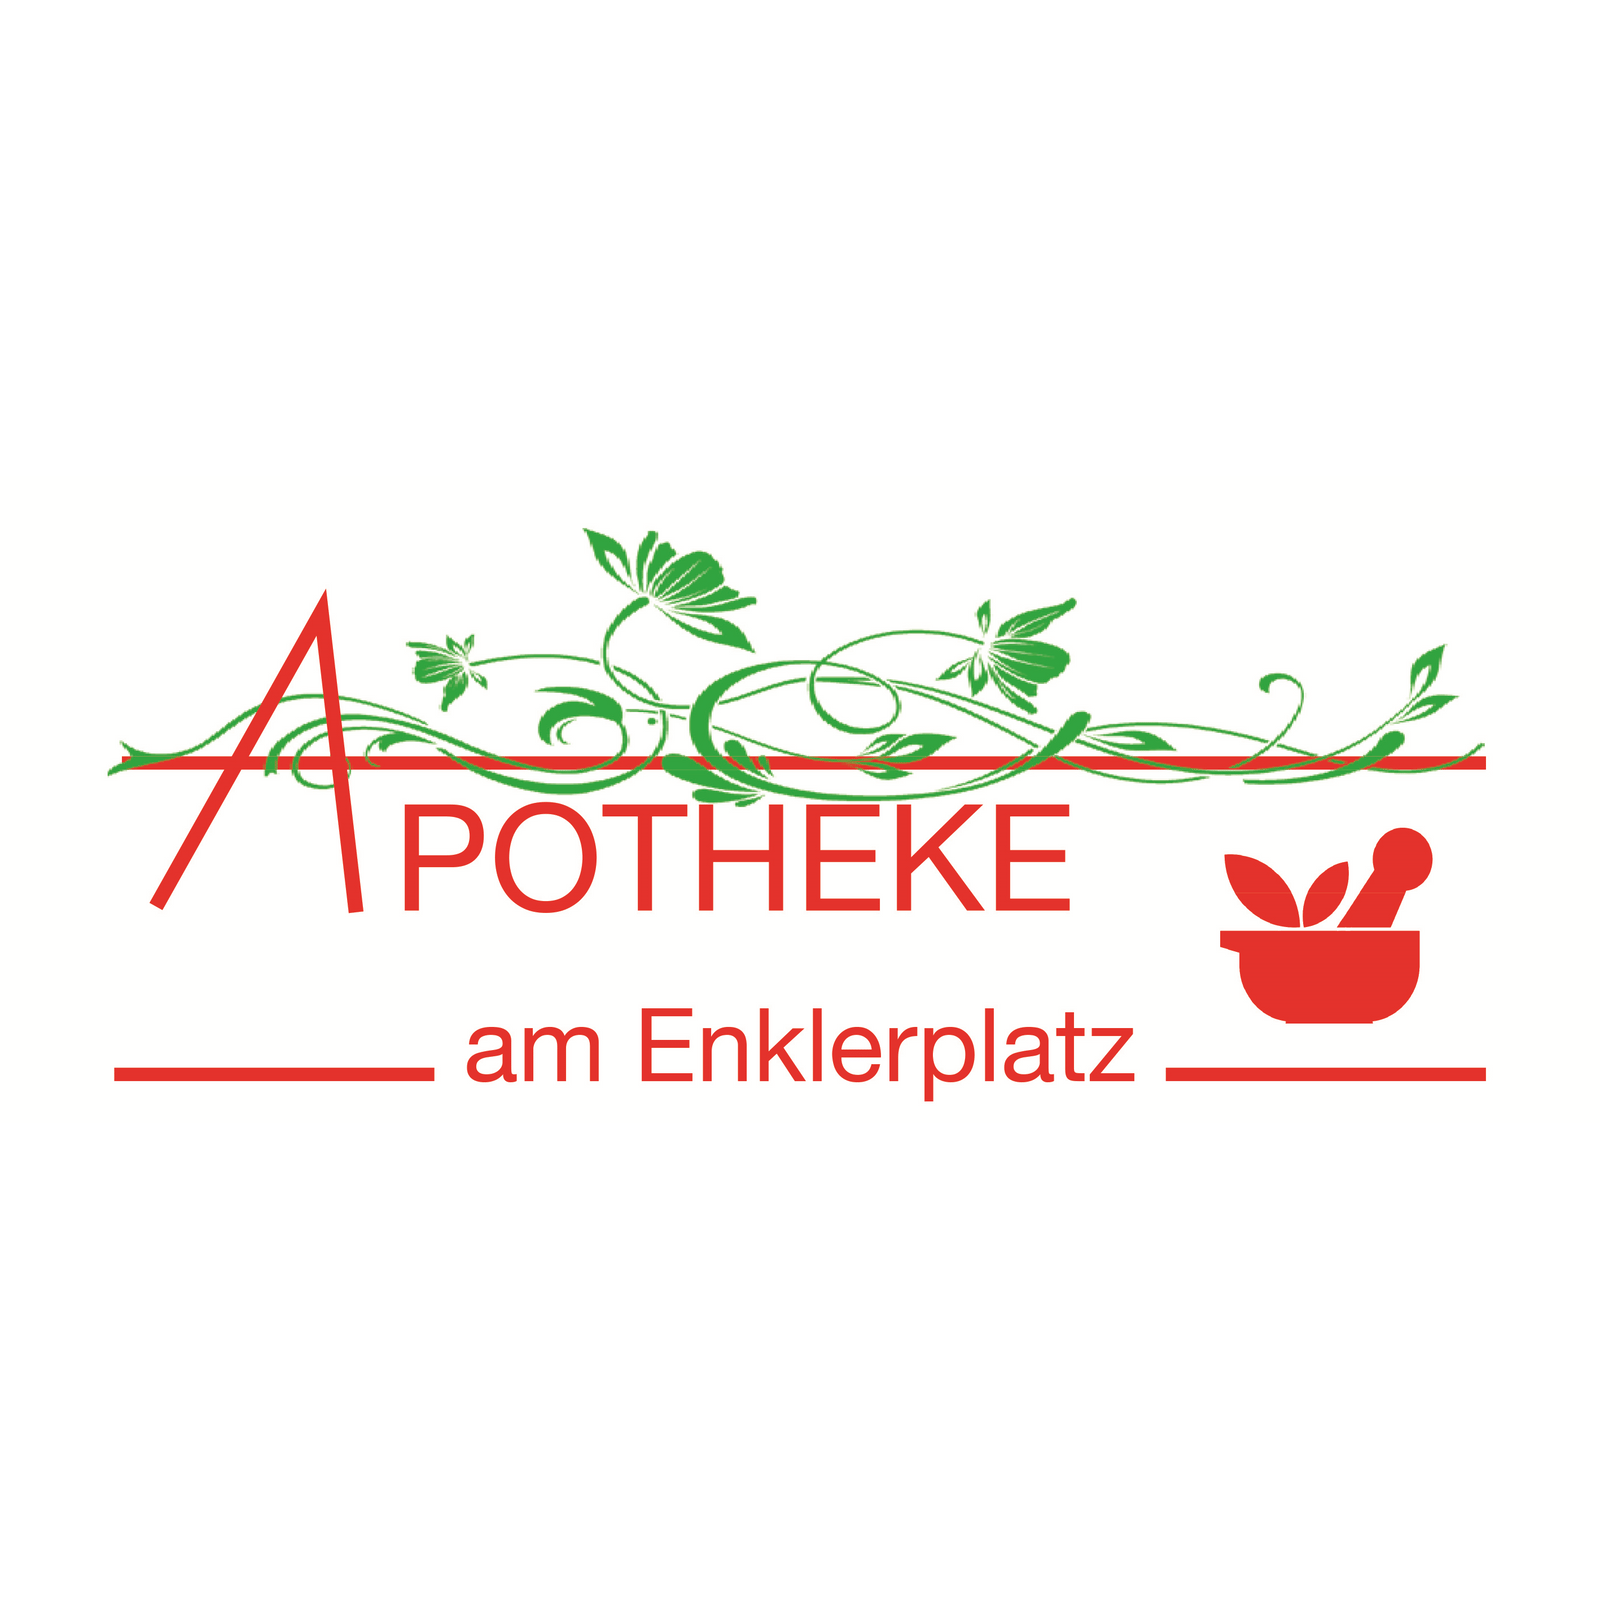 Apotheke am Enklerplatz in Homburg an der Saar - Logo